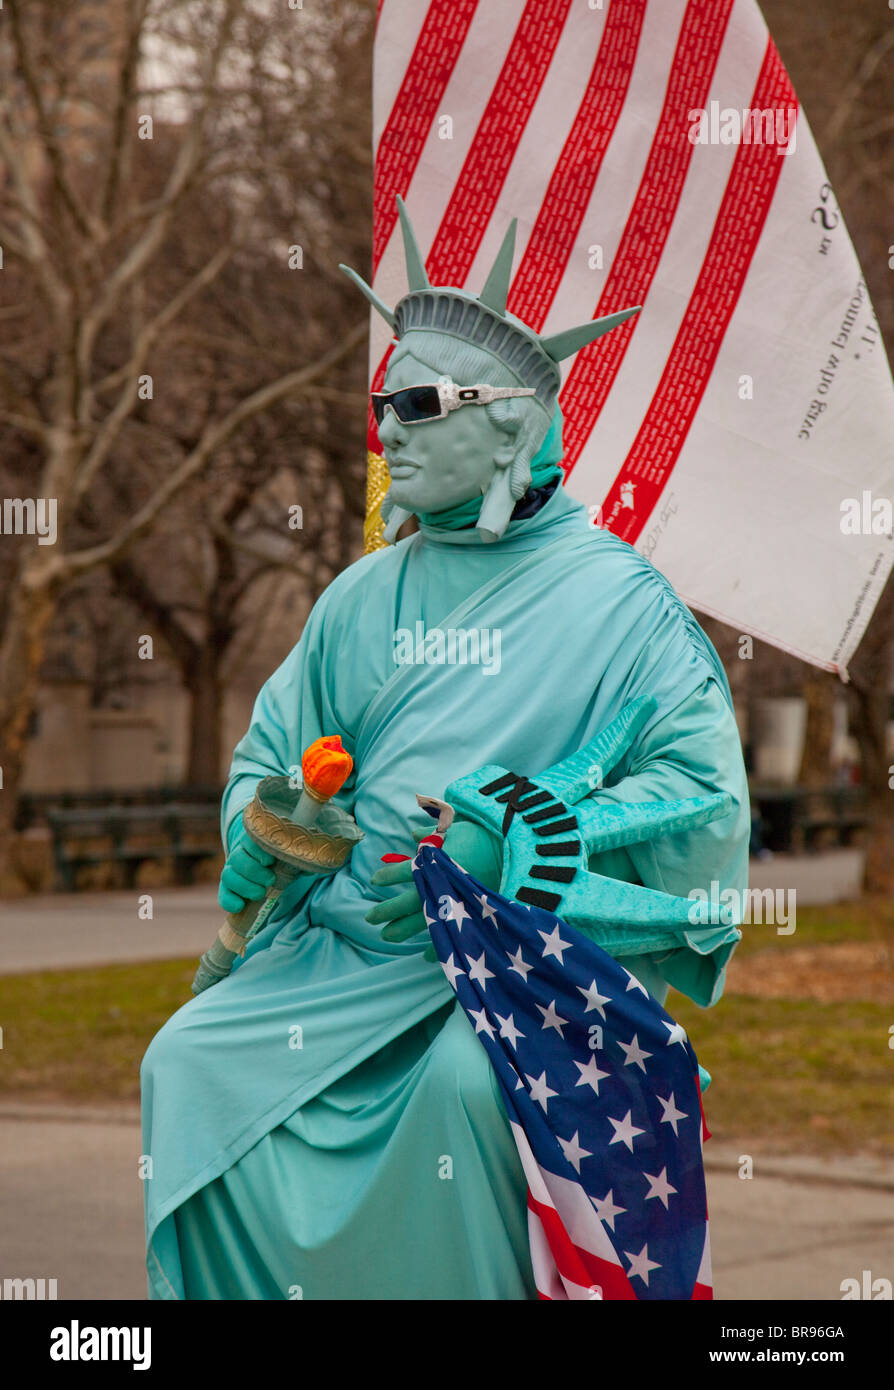 Mann in der New Yorker Freiheitsstatue Kostüm Stockfotografie - Alamy